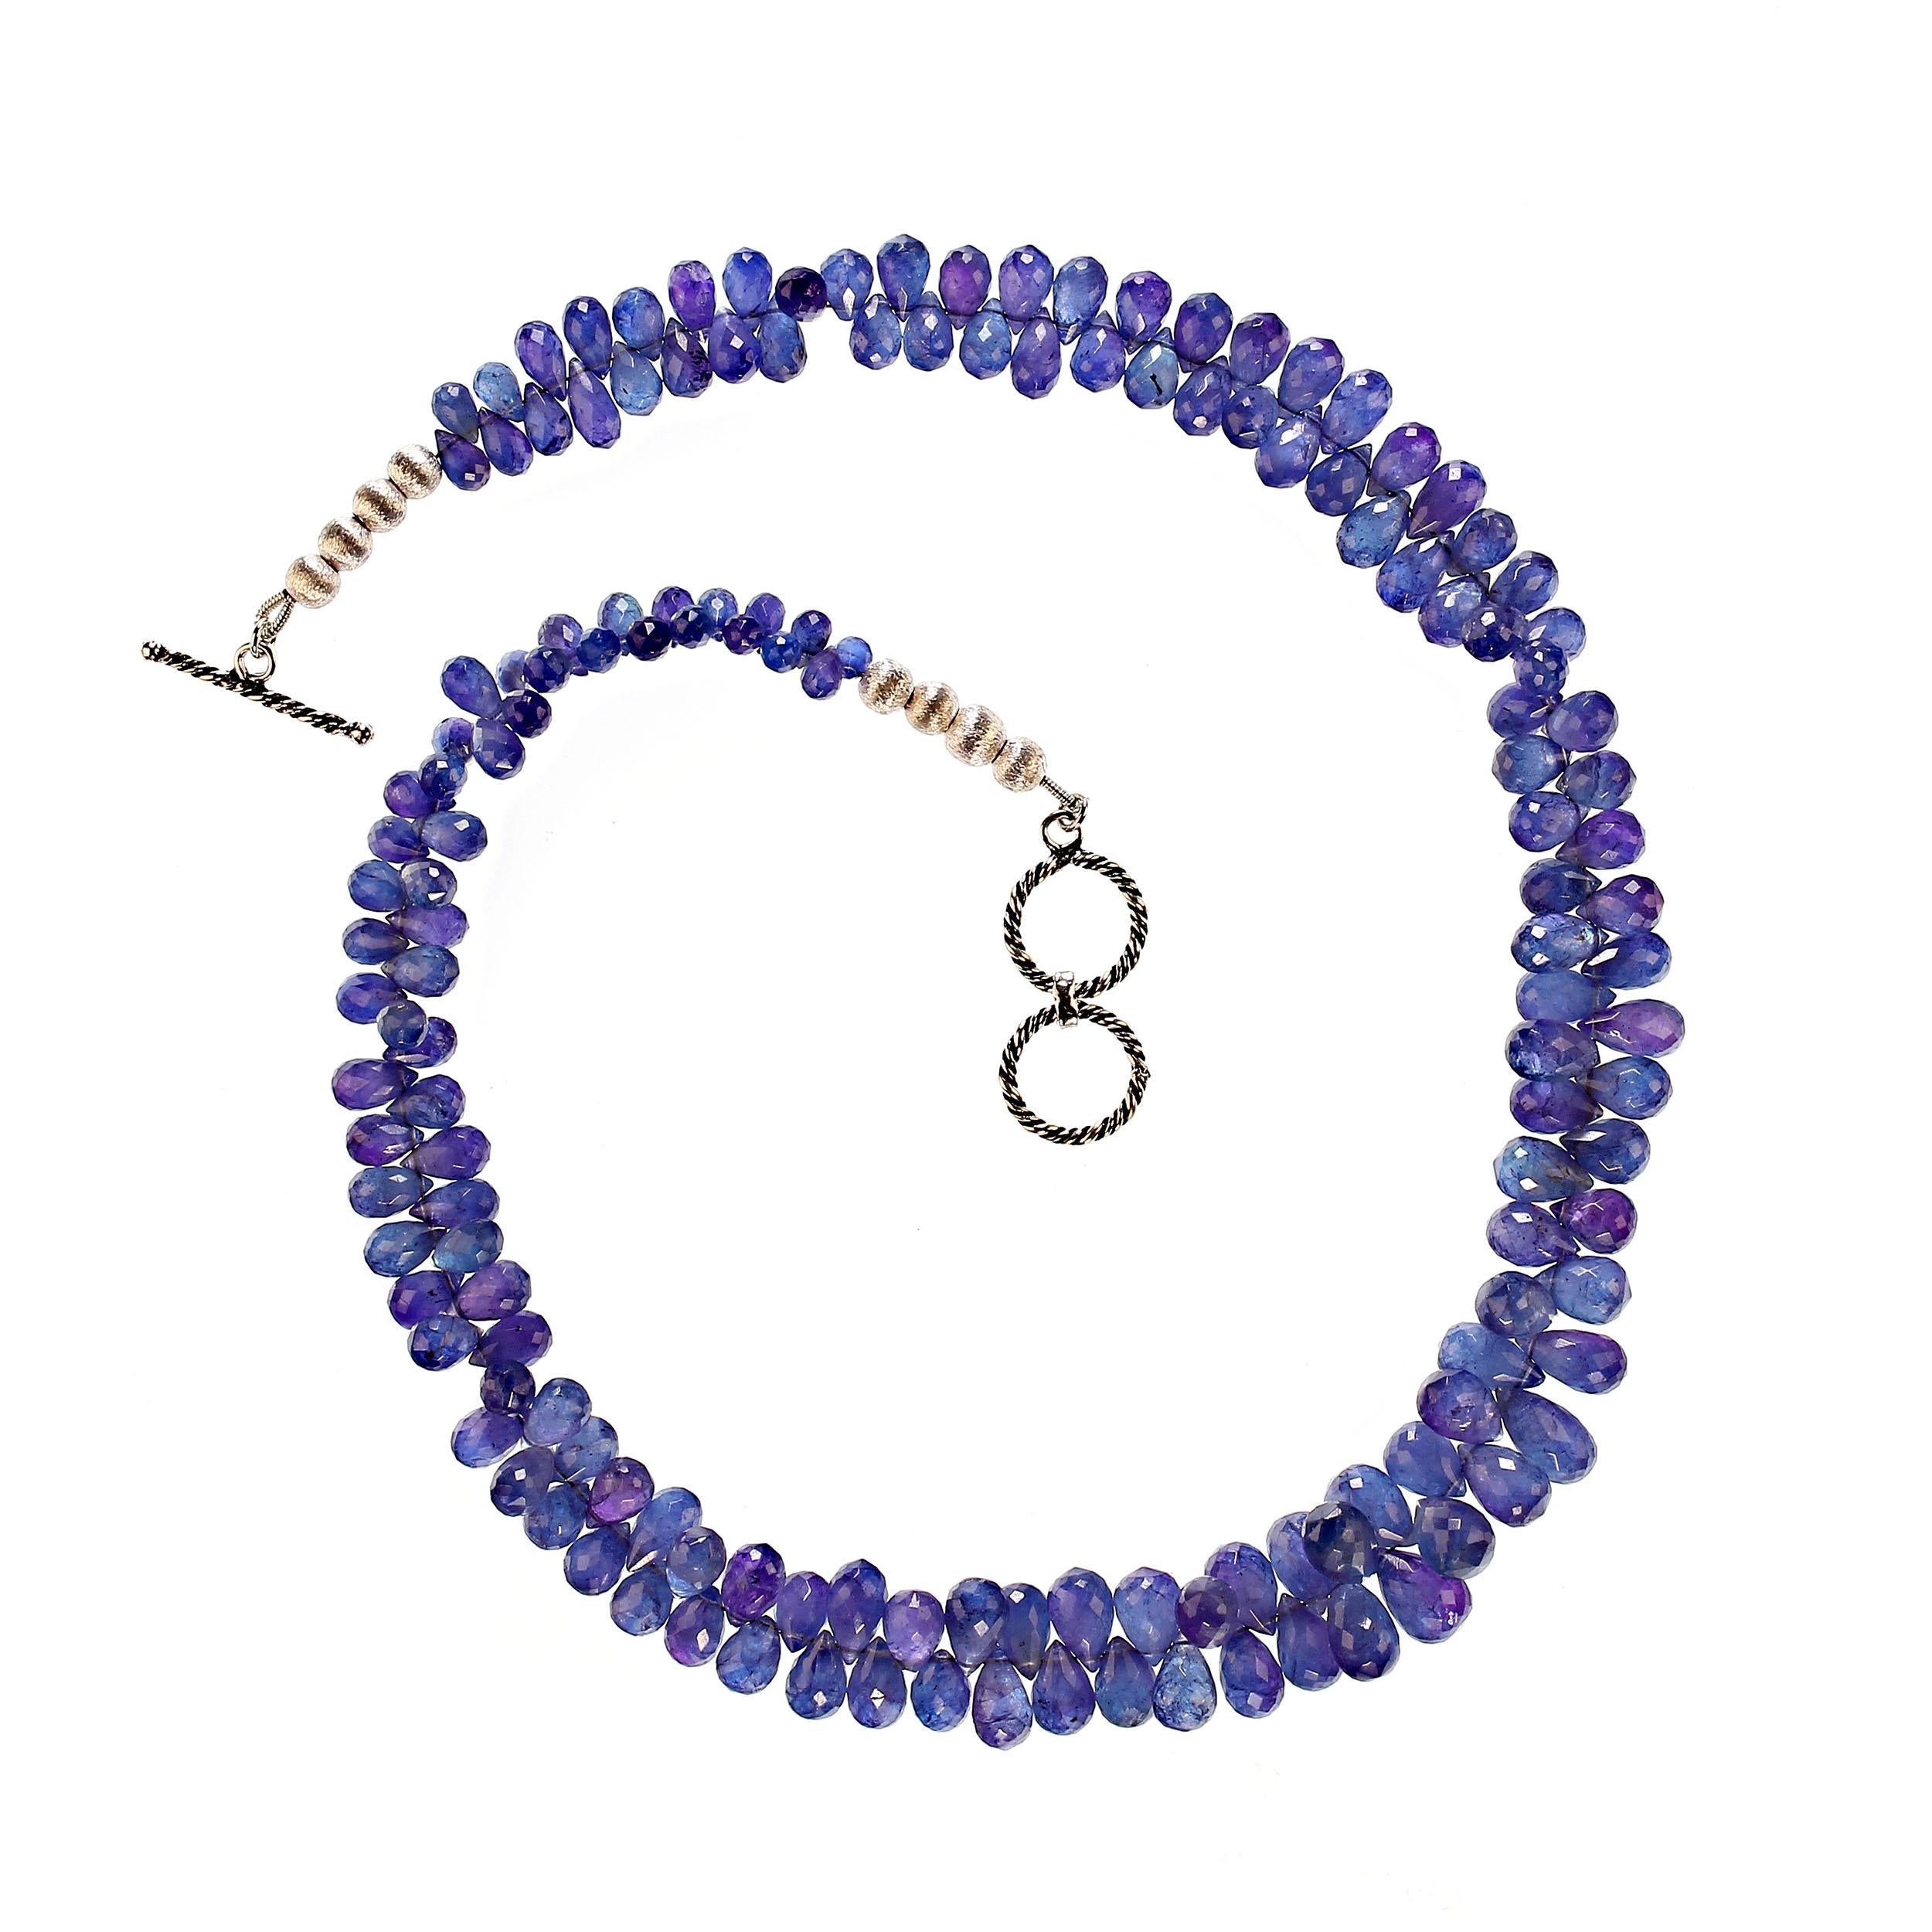 Abgestufte Tansanit-Halskette, AJD 19 Zoll, durchscheinende blau-lila Briolettes, Tansanit für Damen oder Herren im Angebot